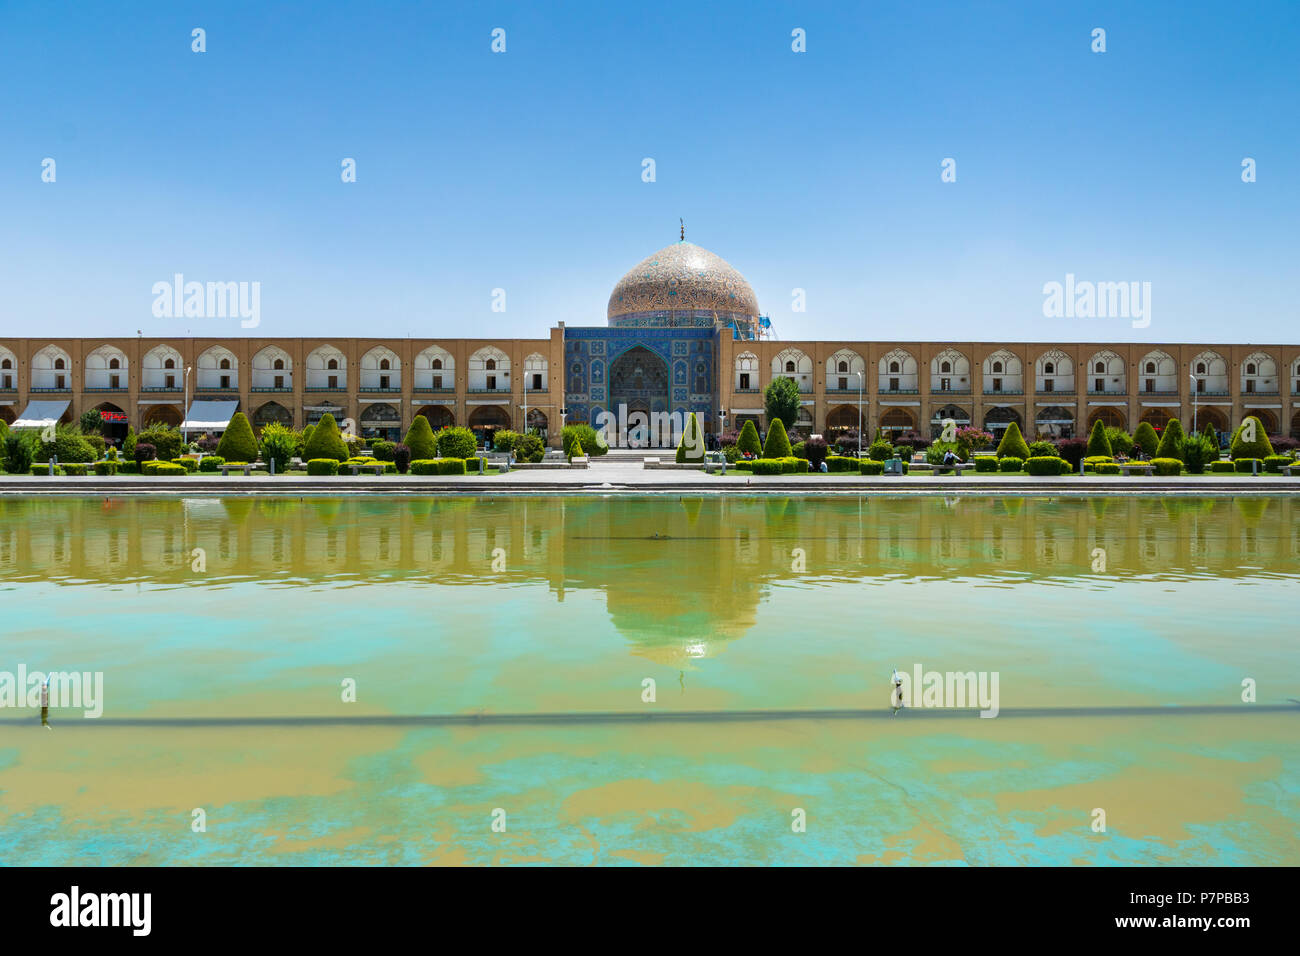 Naqsh-e Jahan Square (Place Imam) - L'un des sites du patrimoine mondial de l'UNESCO à Ispahan (Esfahan, Iran) Banque D'Images